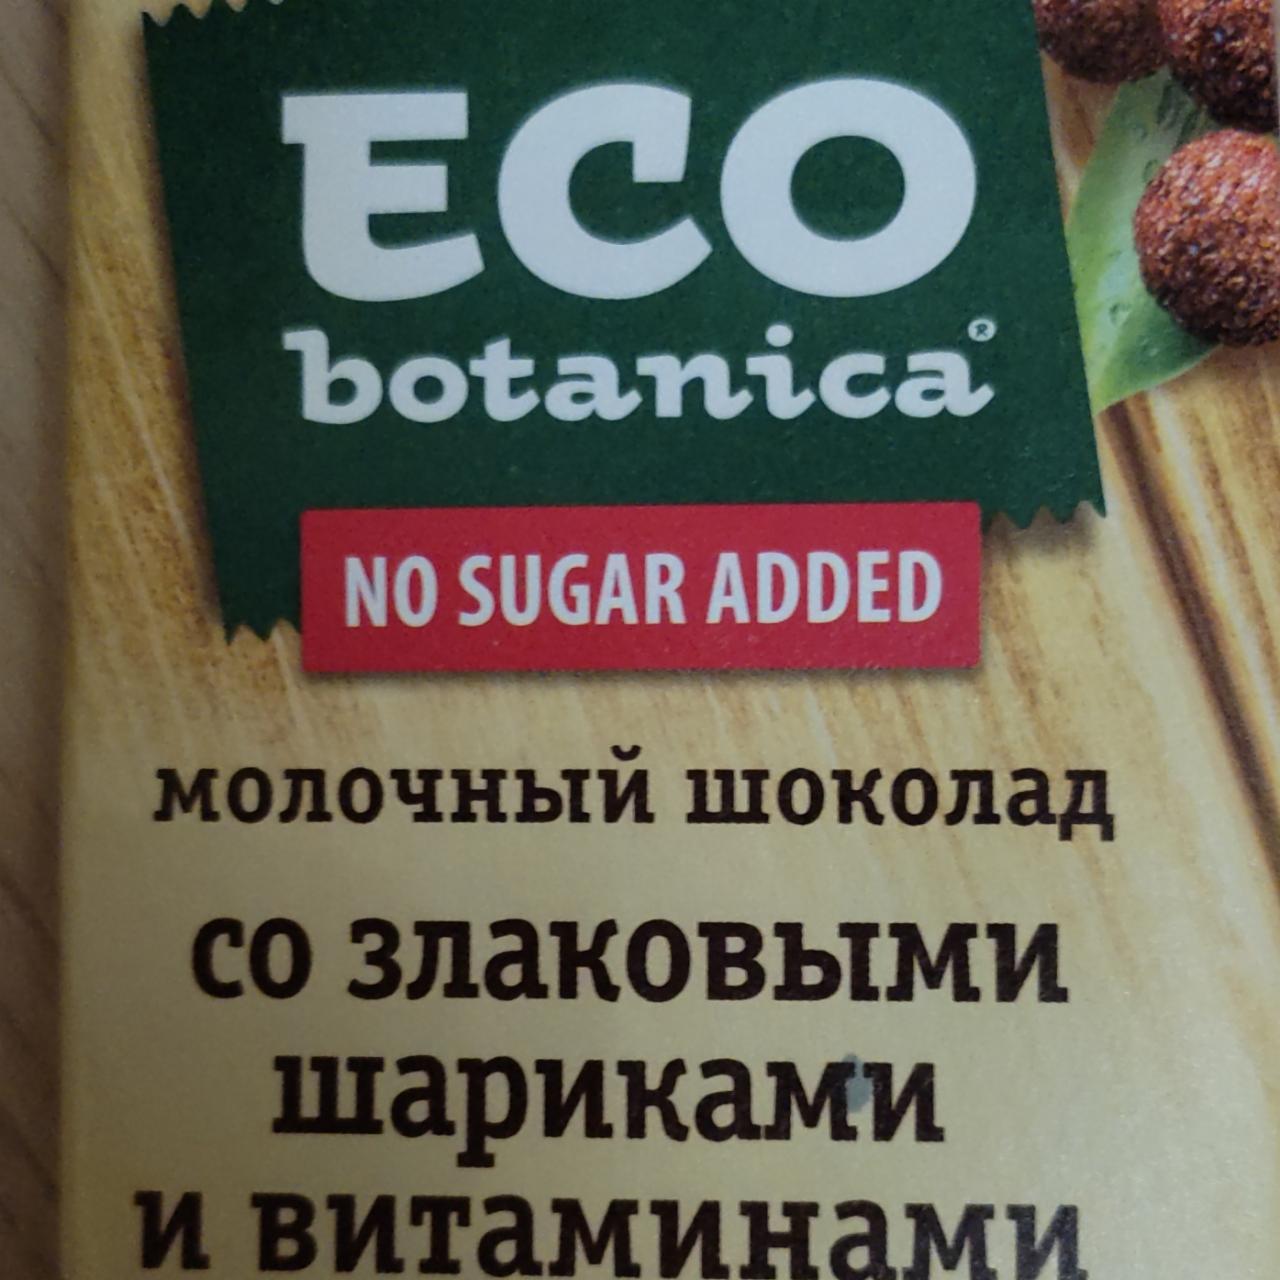 Фото - Шоколад молочный со злаковыми шариками и витаминами Eco-Botanica